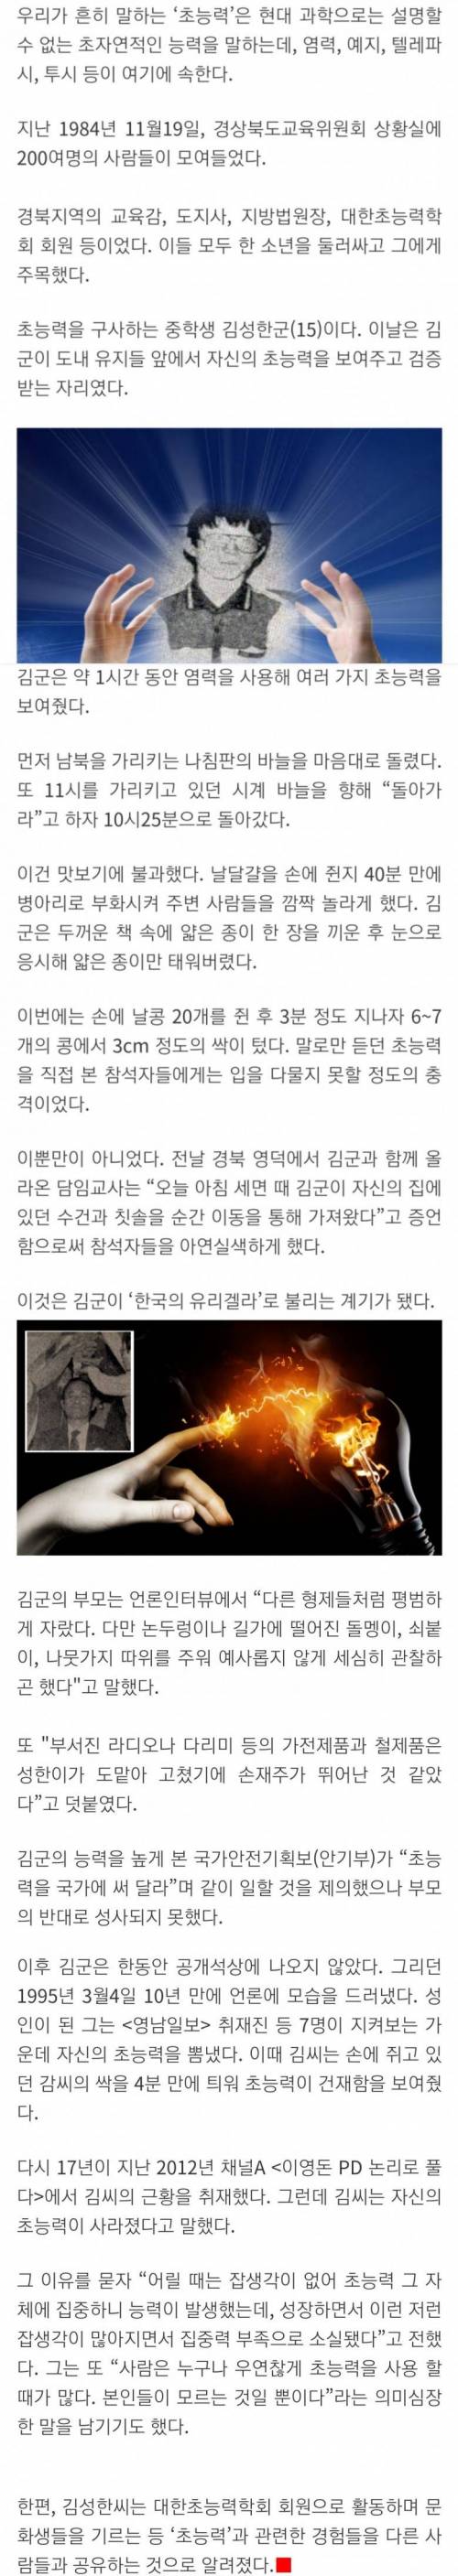 200명 앞에서 입증한 한국 초능력 소년 김성환.jpg